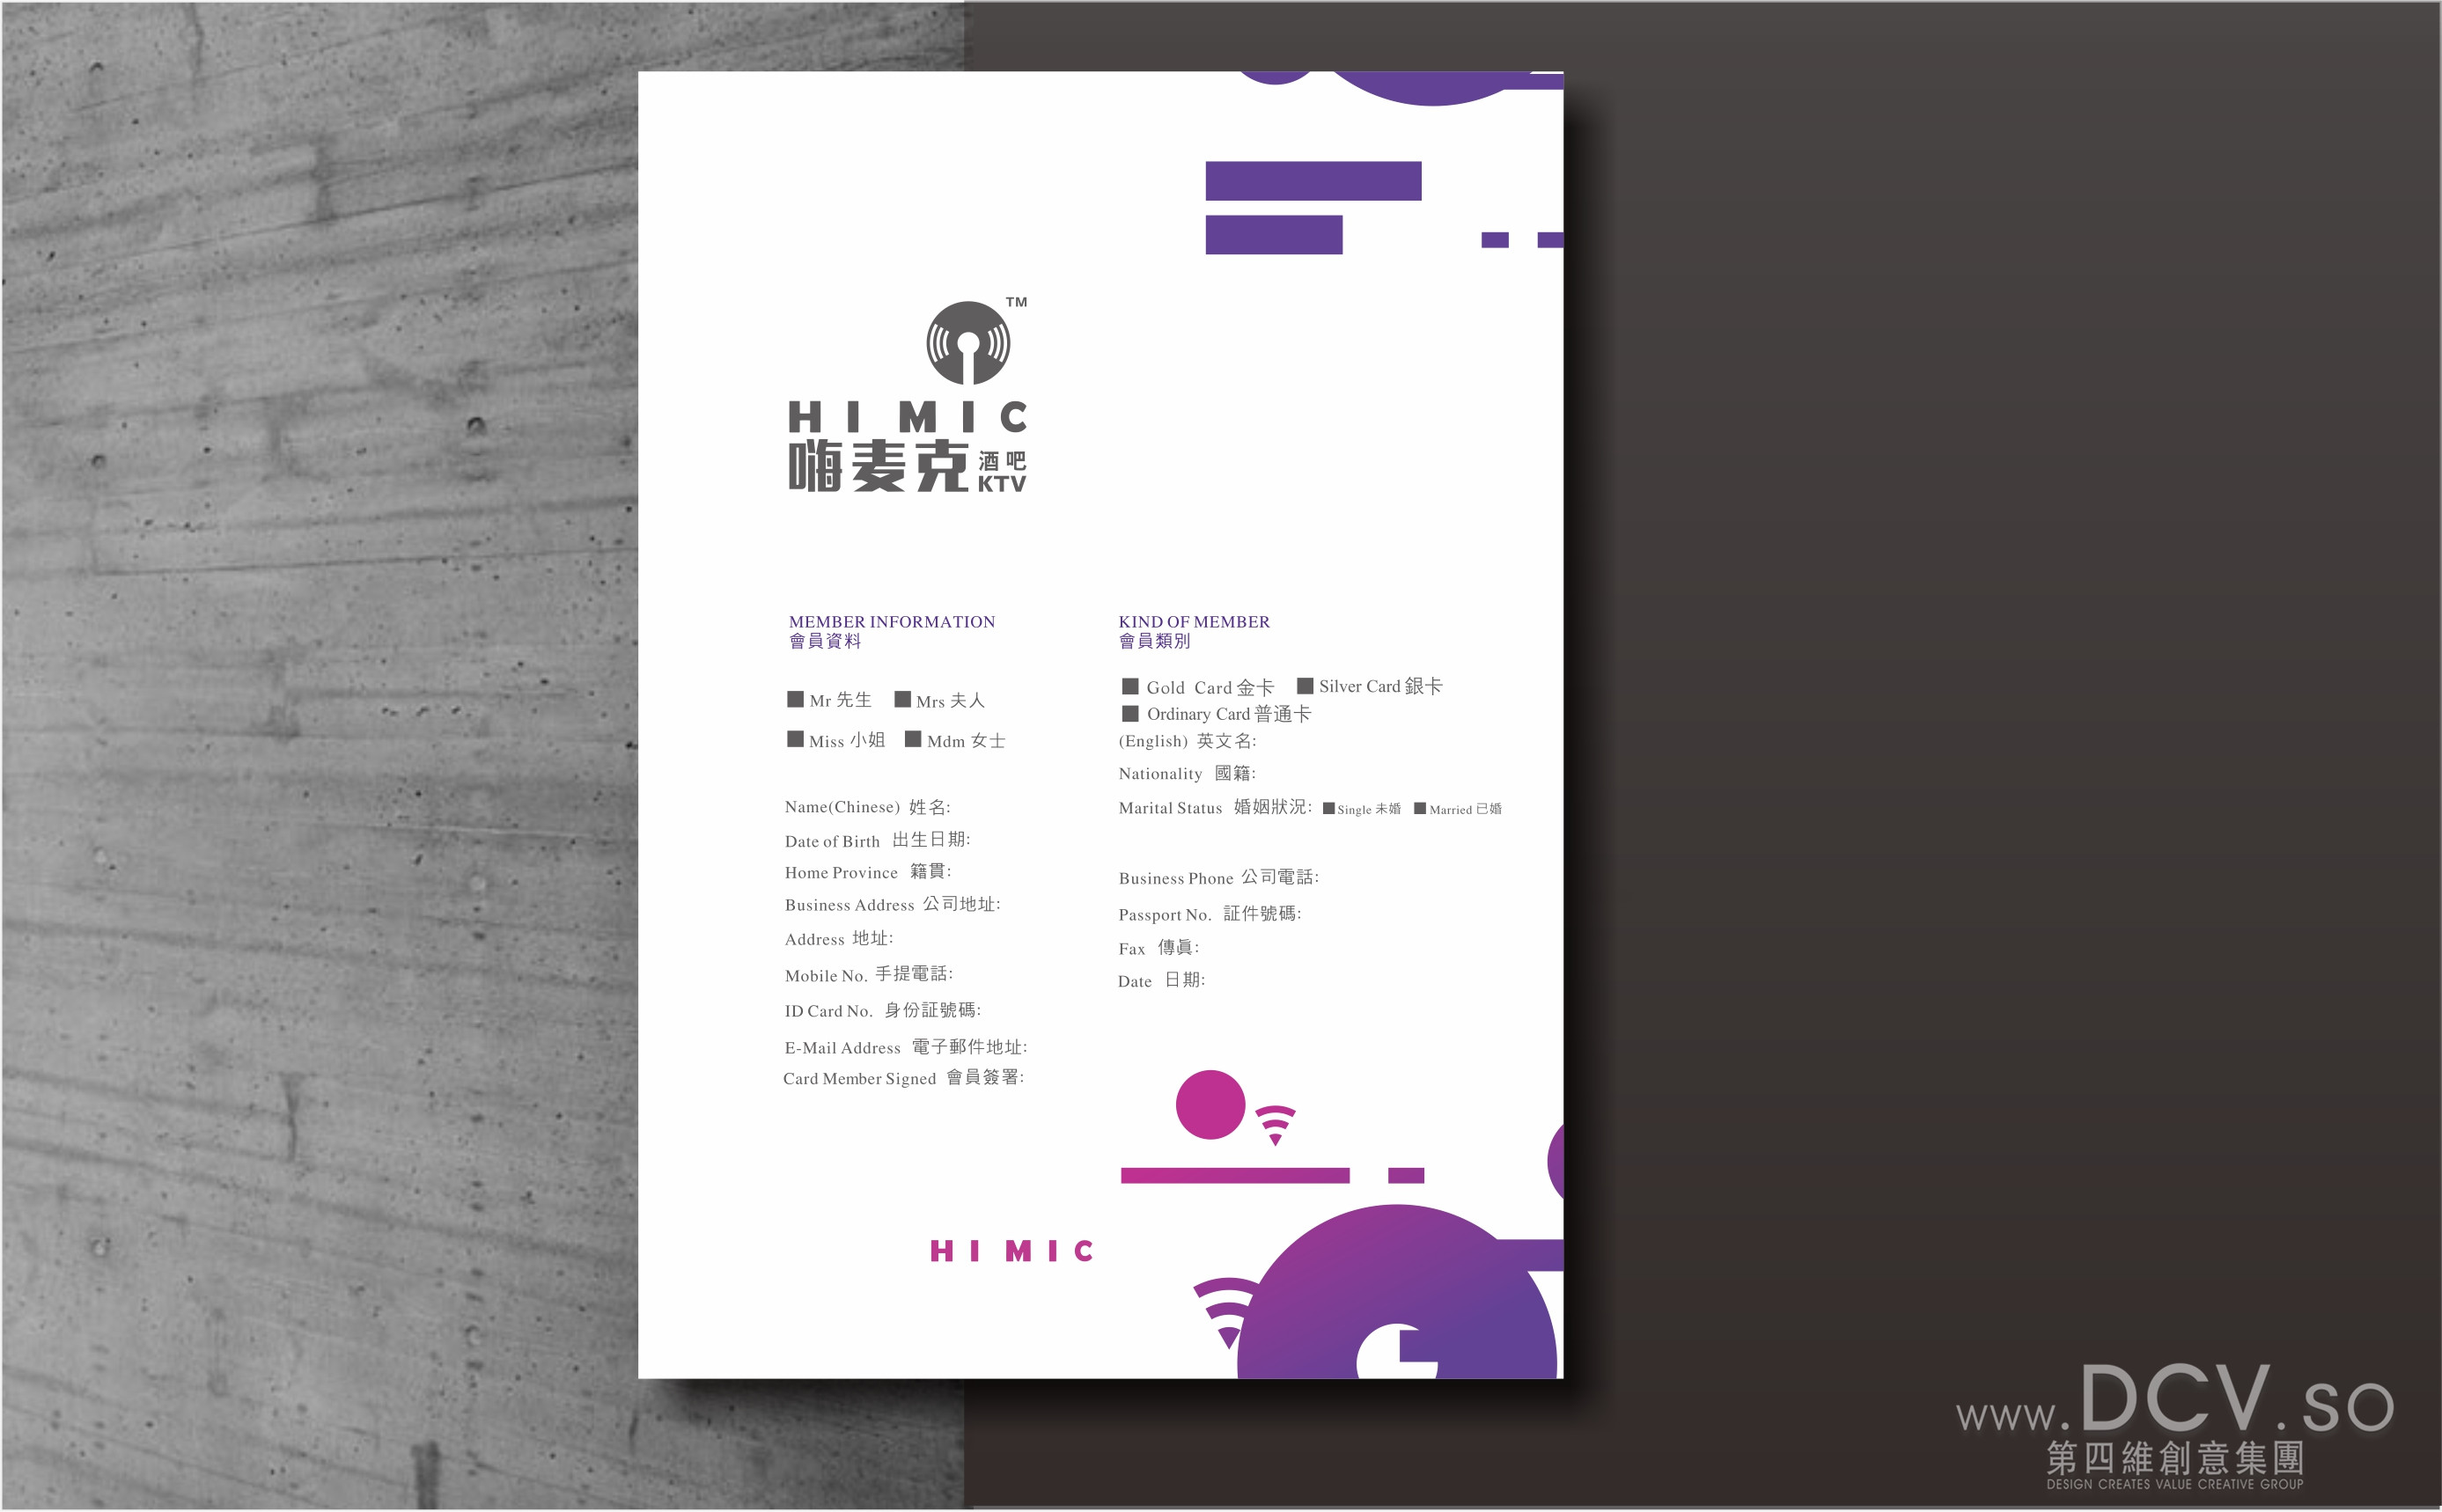 西安-高陵HIMIC嗨麦克酒吧主题量贩KTV企业LOGO及平面VI设计